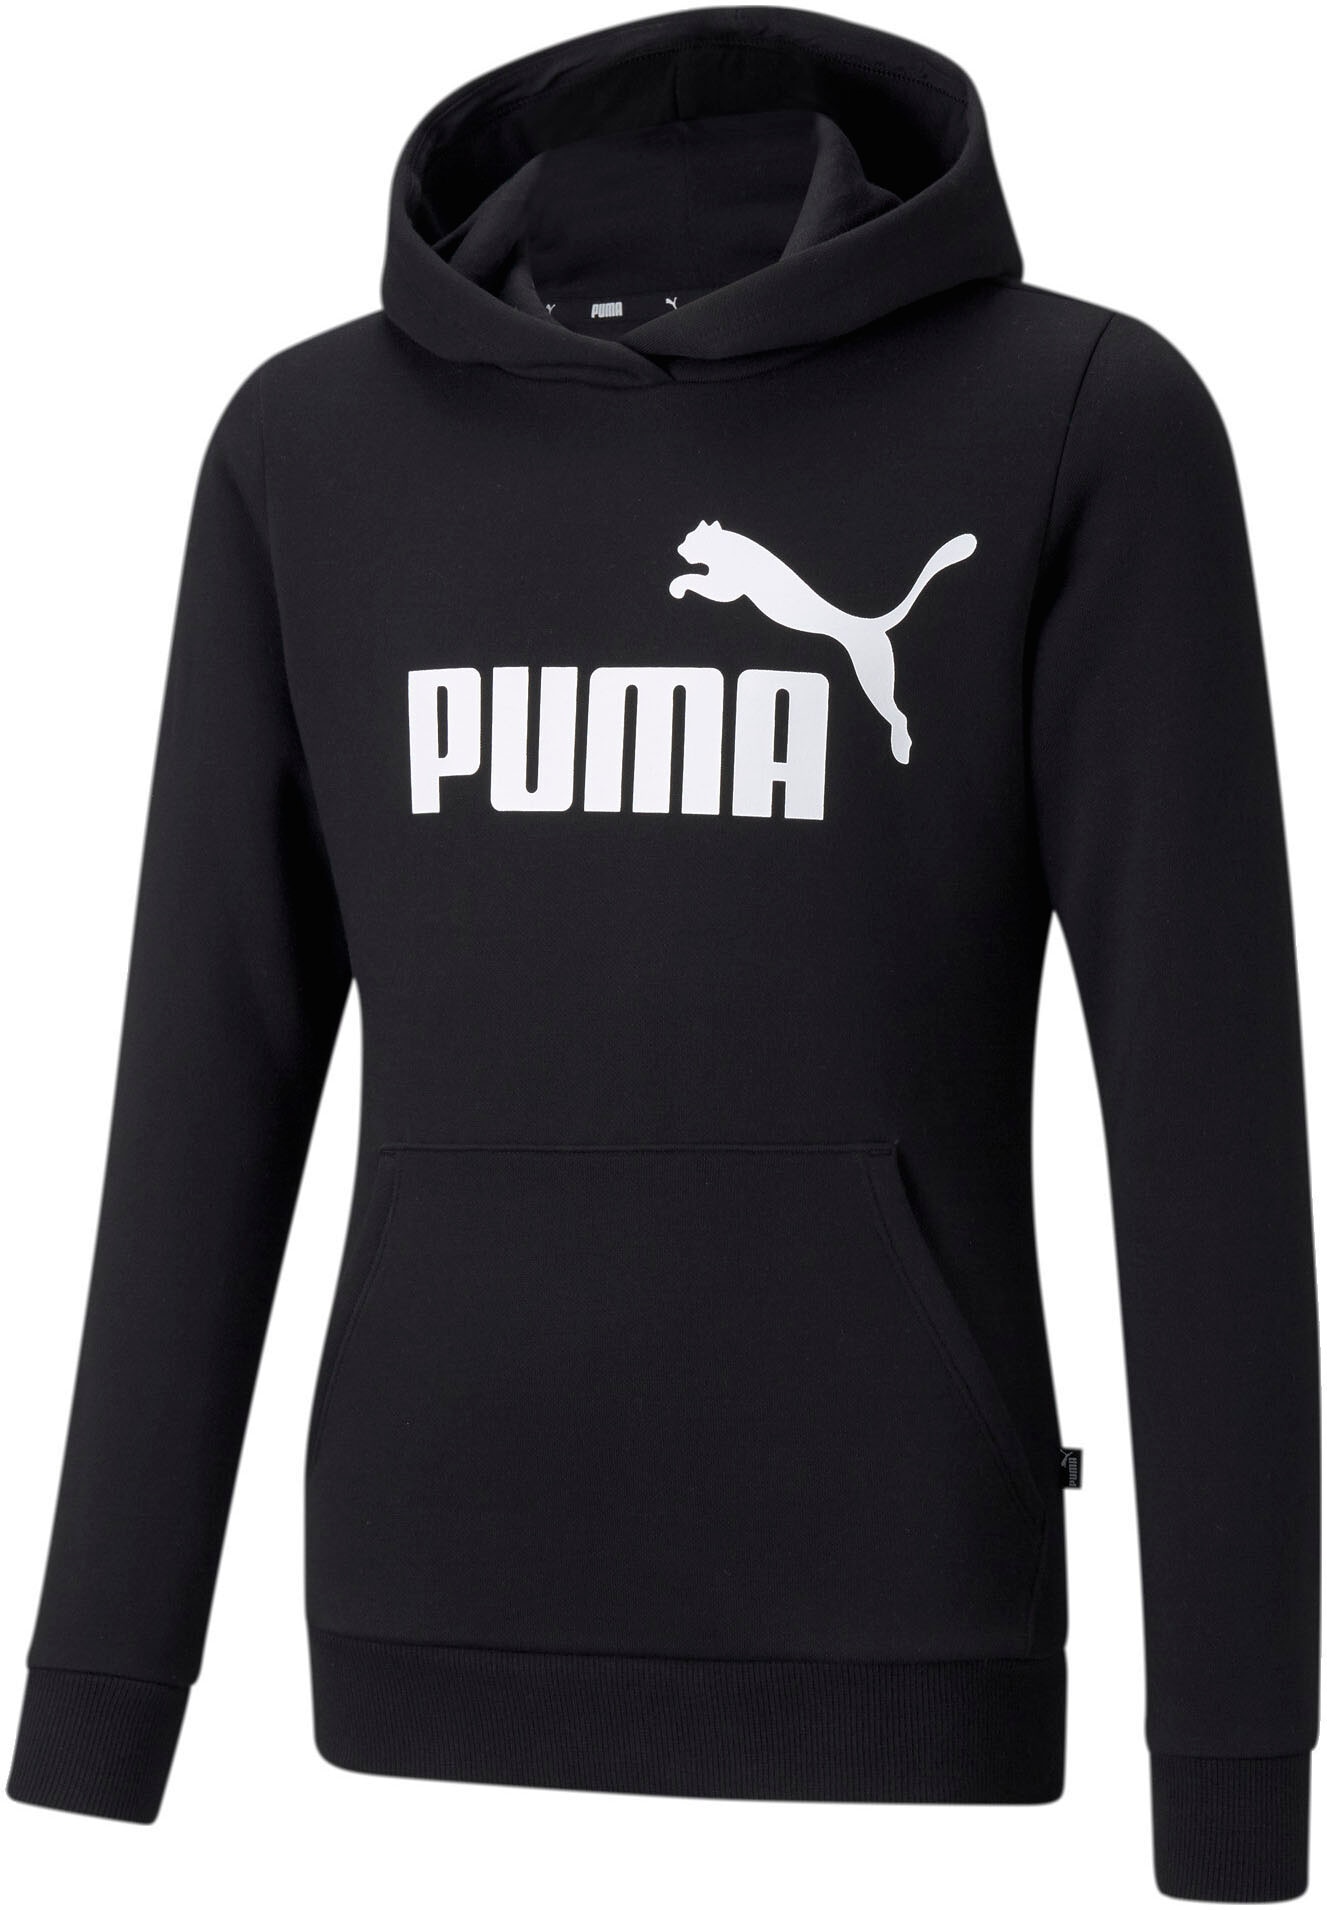 Puma Kinder-Kleidung online kaufen Jelmoli-Versand bei